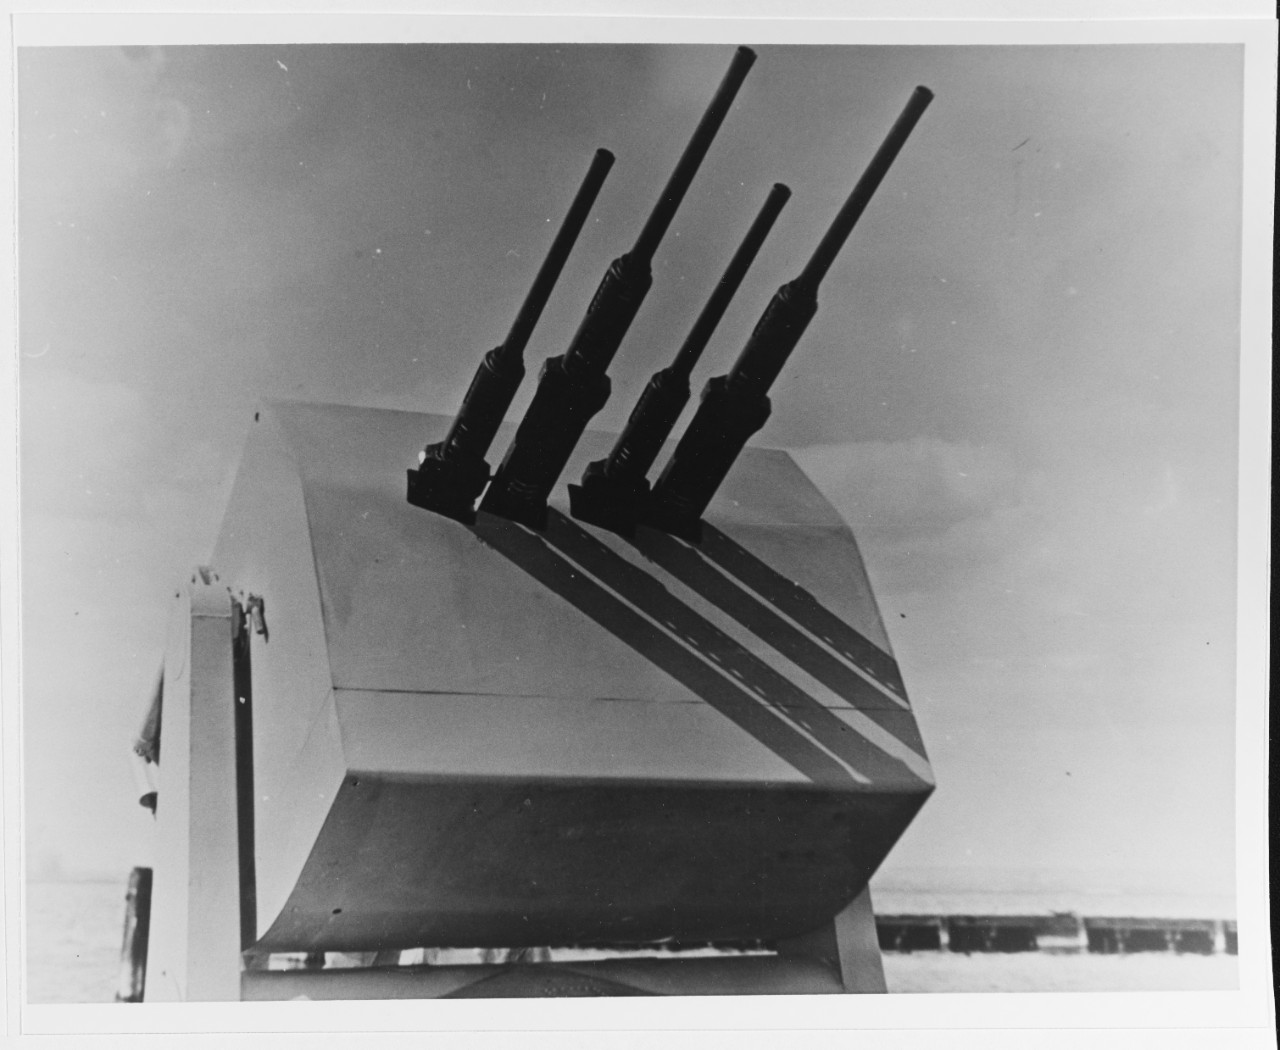 Elco "Thunderbolt" 20mm quadruple gun mount